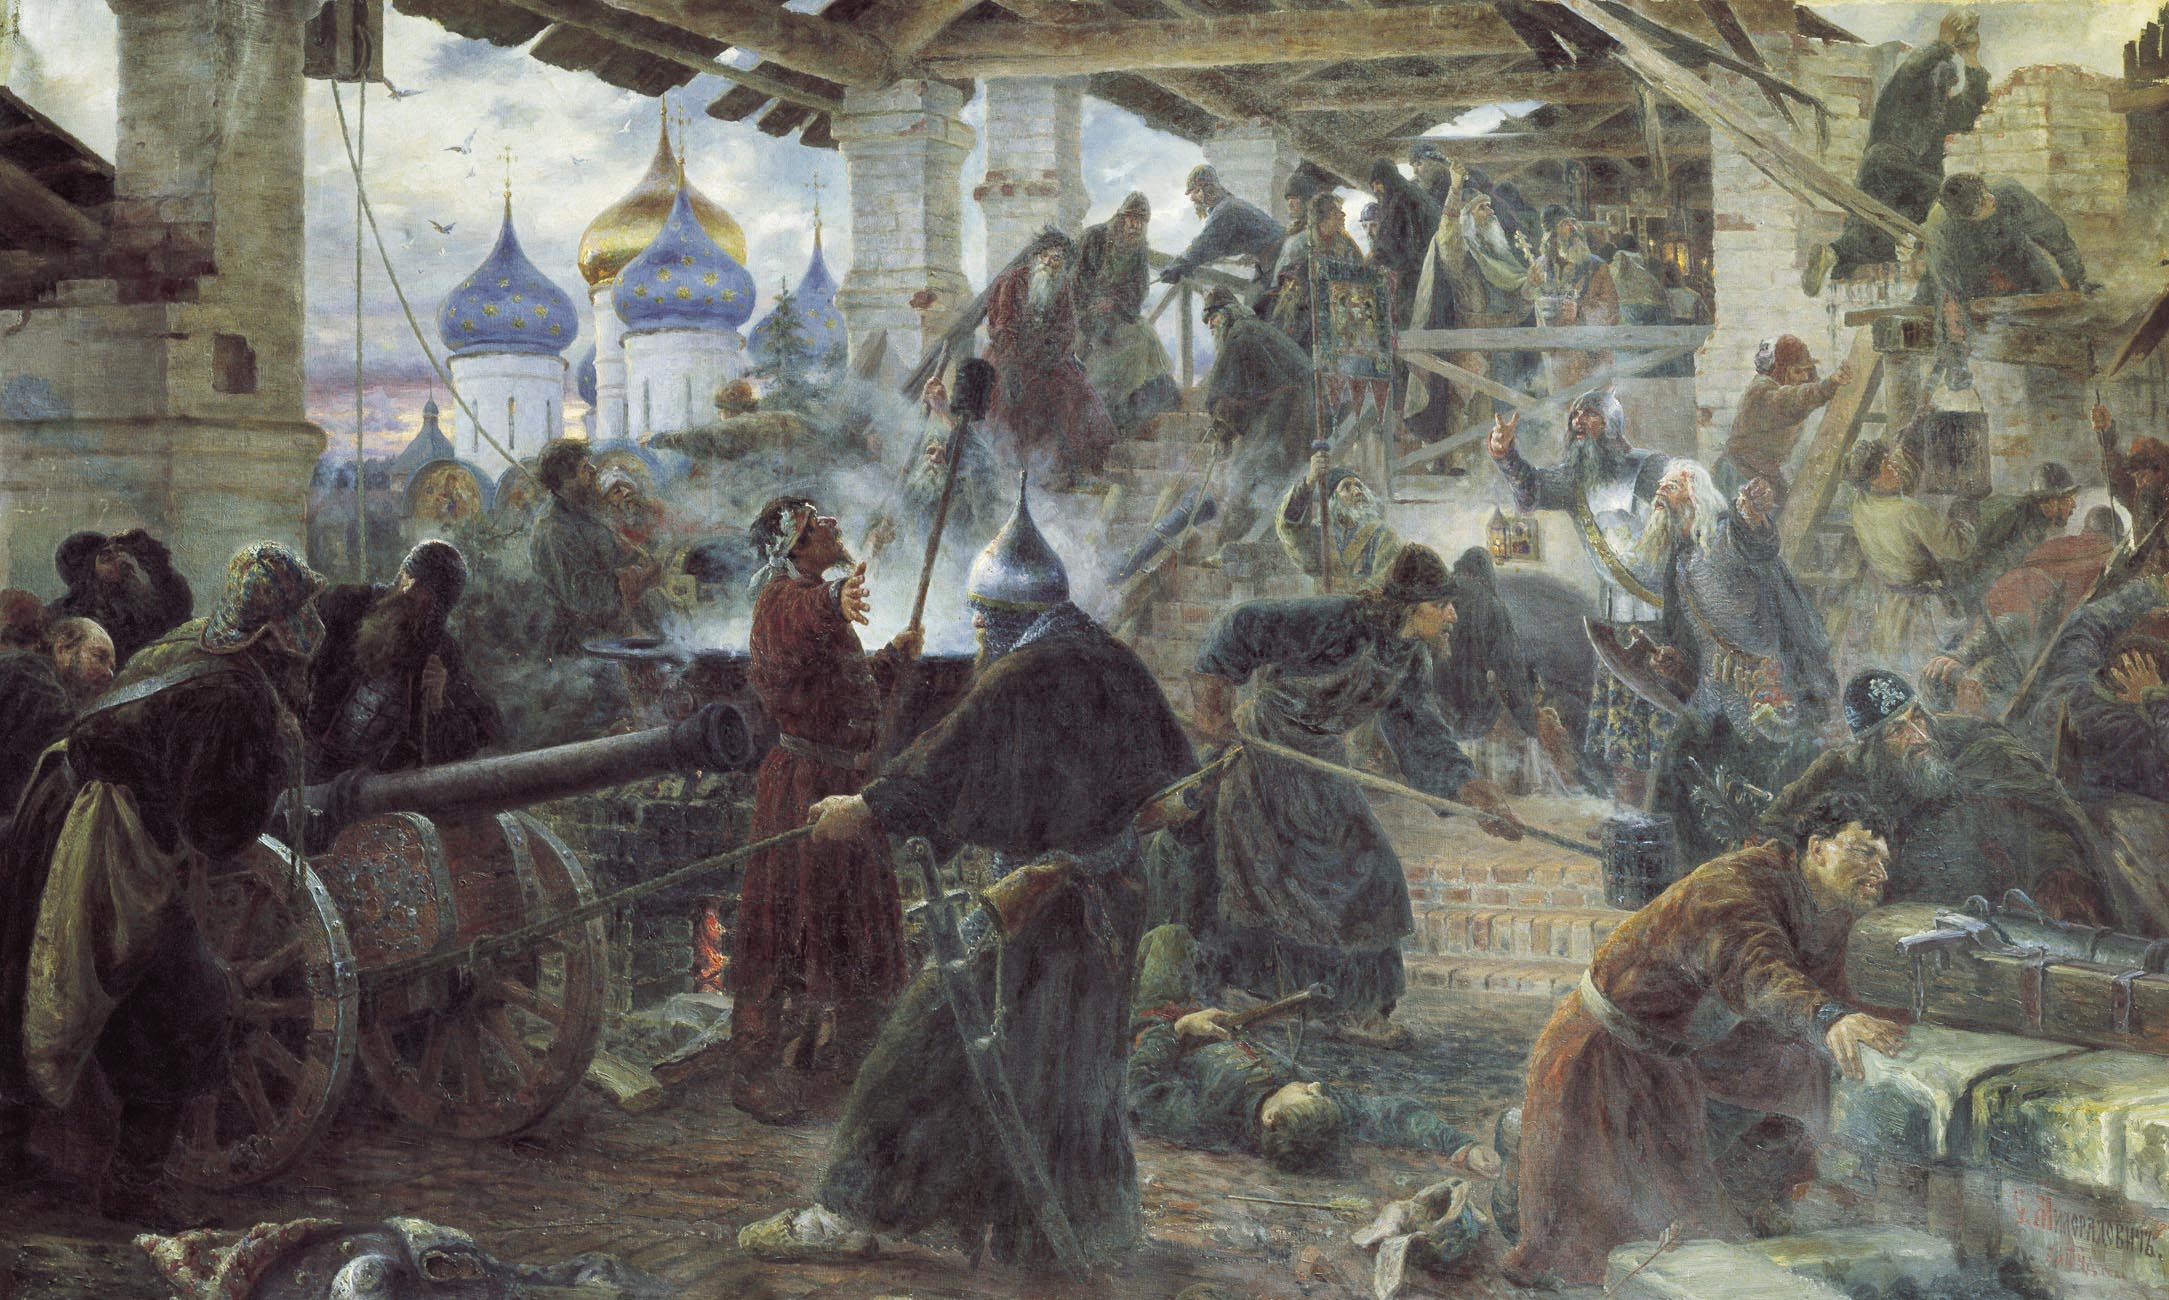 Милорадович. Оборона Троице-Cергиевой лавры. 1894